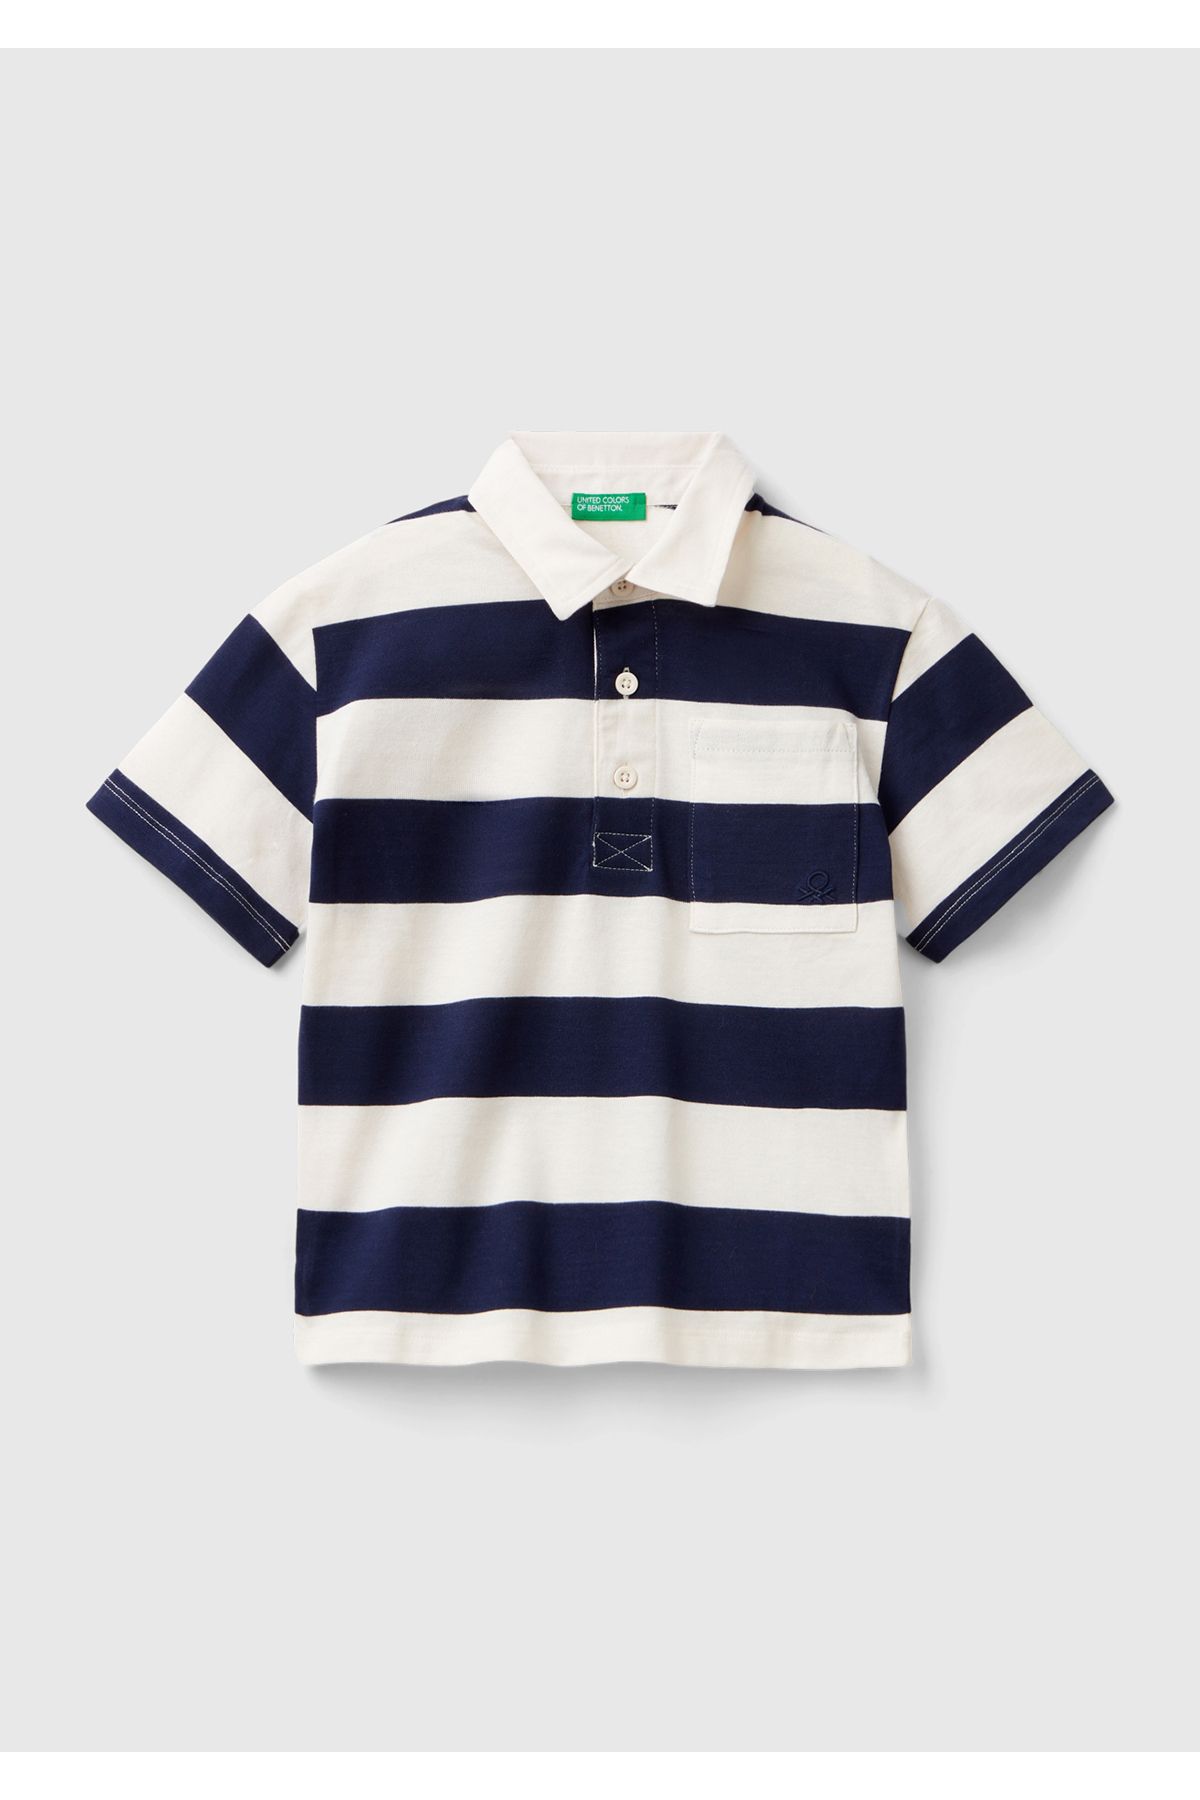 United Colors of Benetton Erkek Çocuk Lacivert-Krem Logo İşlemeli ve Aplikeli Yatay Çizgili Polo Tişört